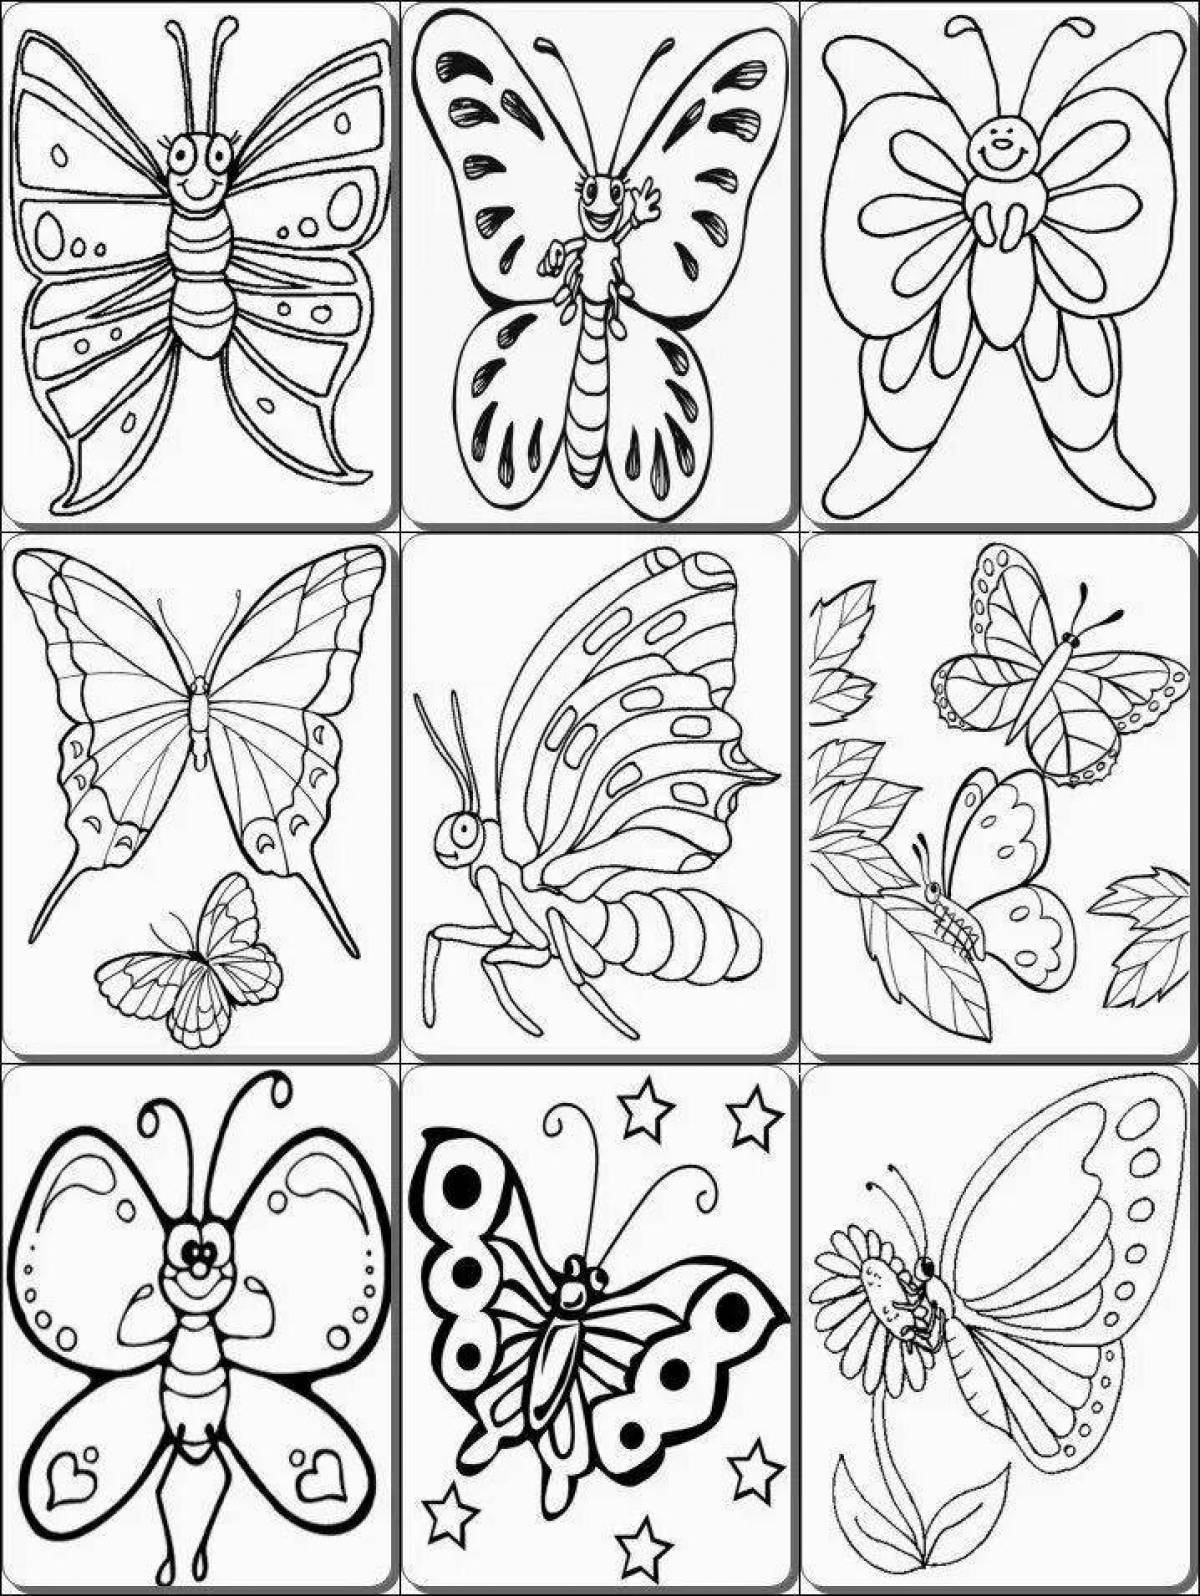 Раскраска на 4 листах а4. Раскраска "бабочки". Небольшие картинки для раскрашивания. Насекомые. Раскраска. Раскраски бабочки для детей 6-7 лет.